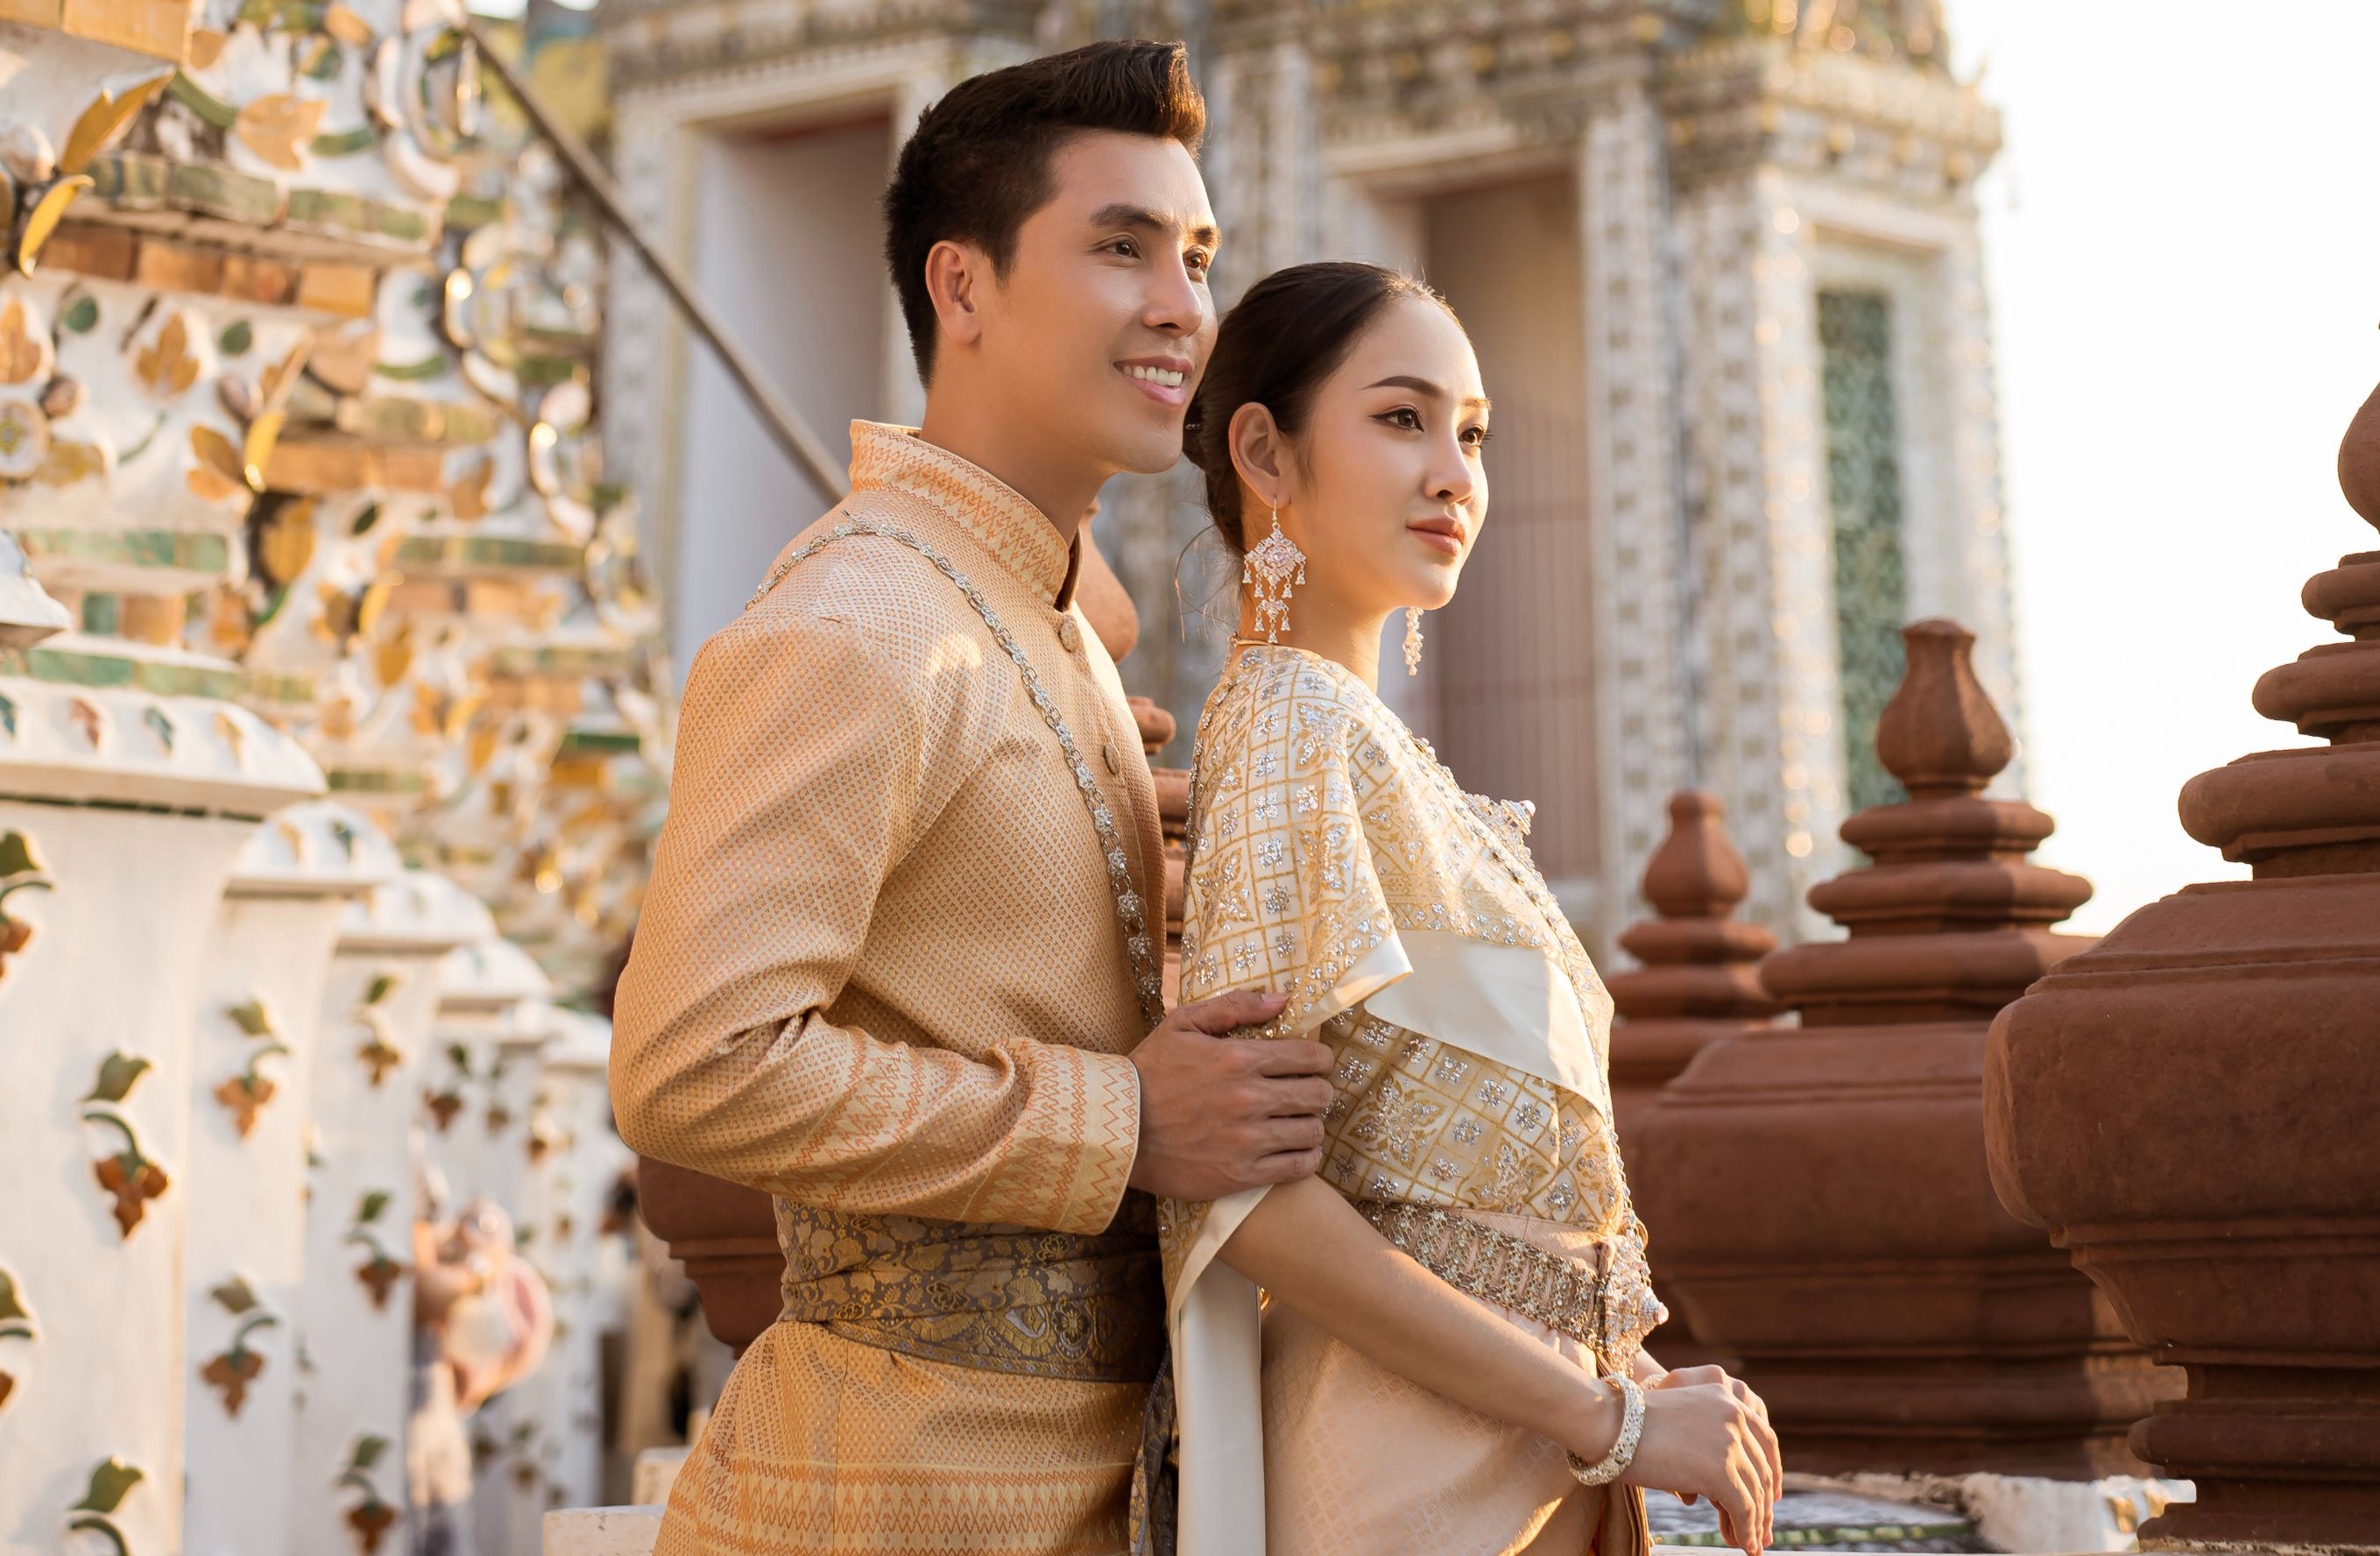 Hoàng Phi Kha 7 copy Á vương Hoàng Phi Kha “đắt sô” làm giám khảo các cuộc thi sắc đẹp tại Thái